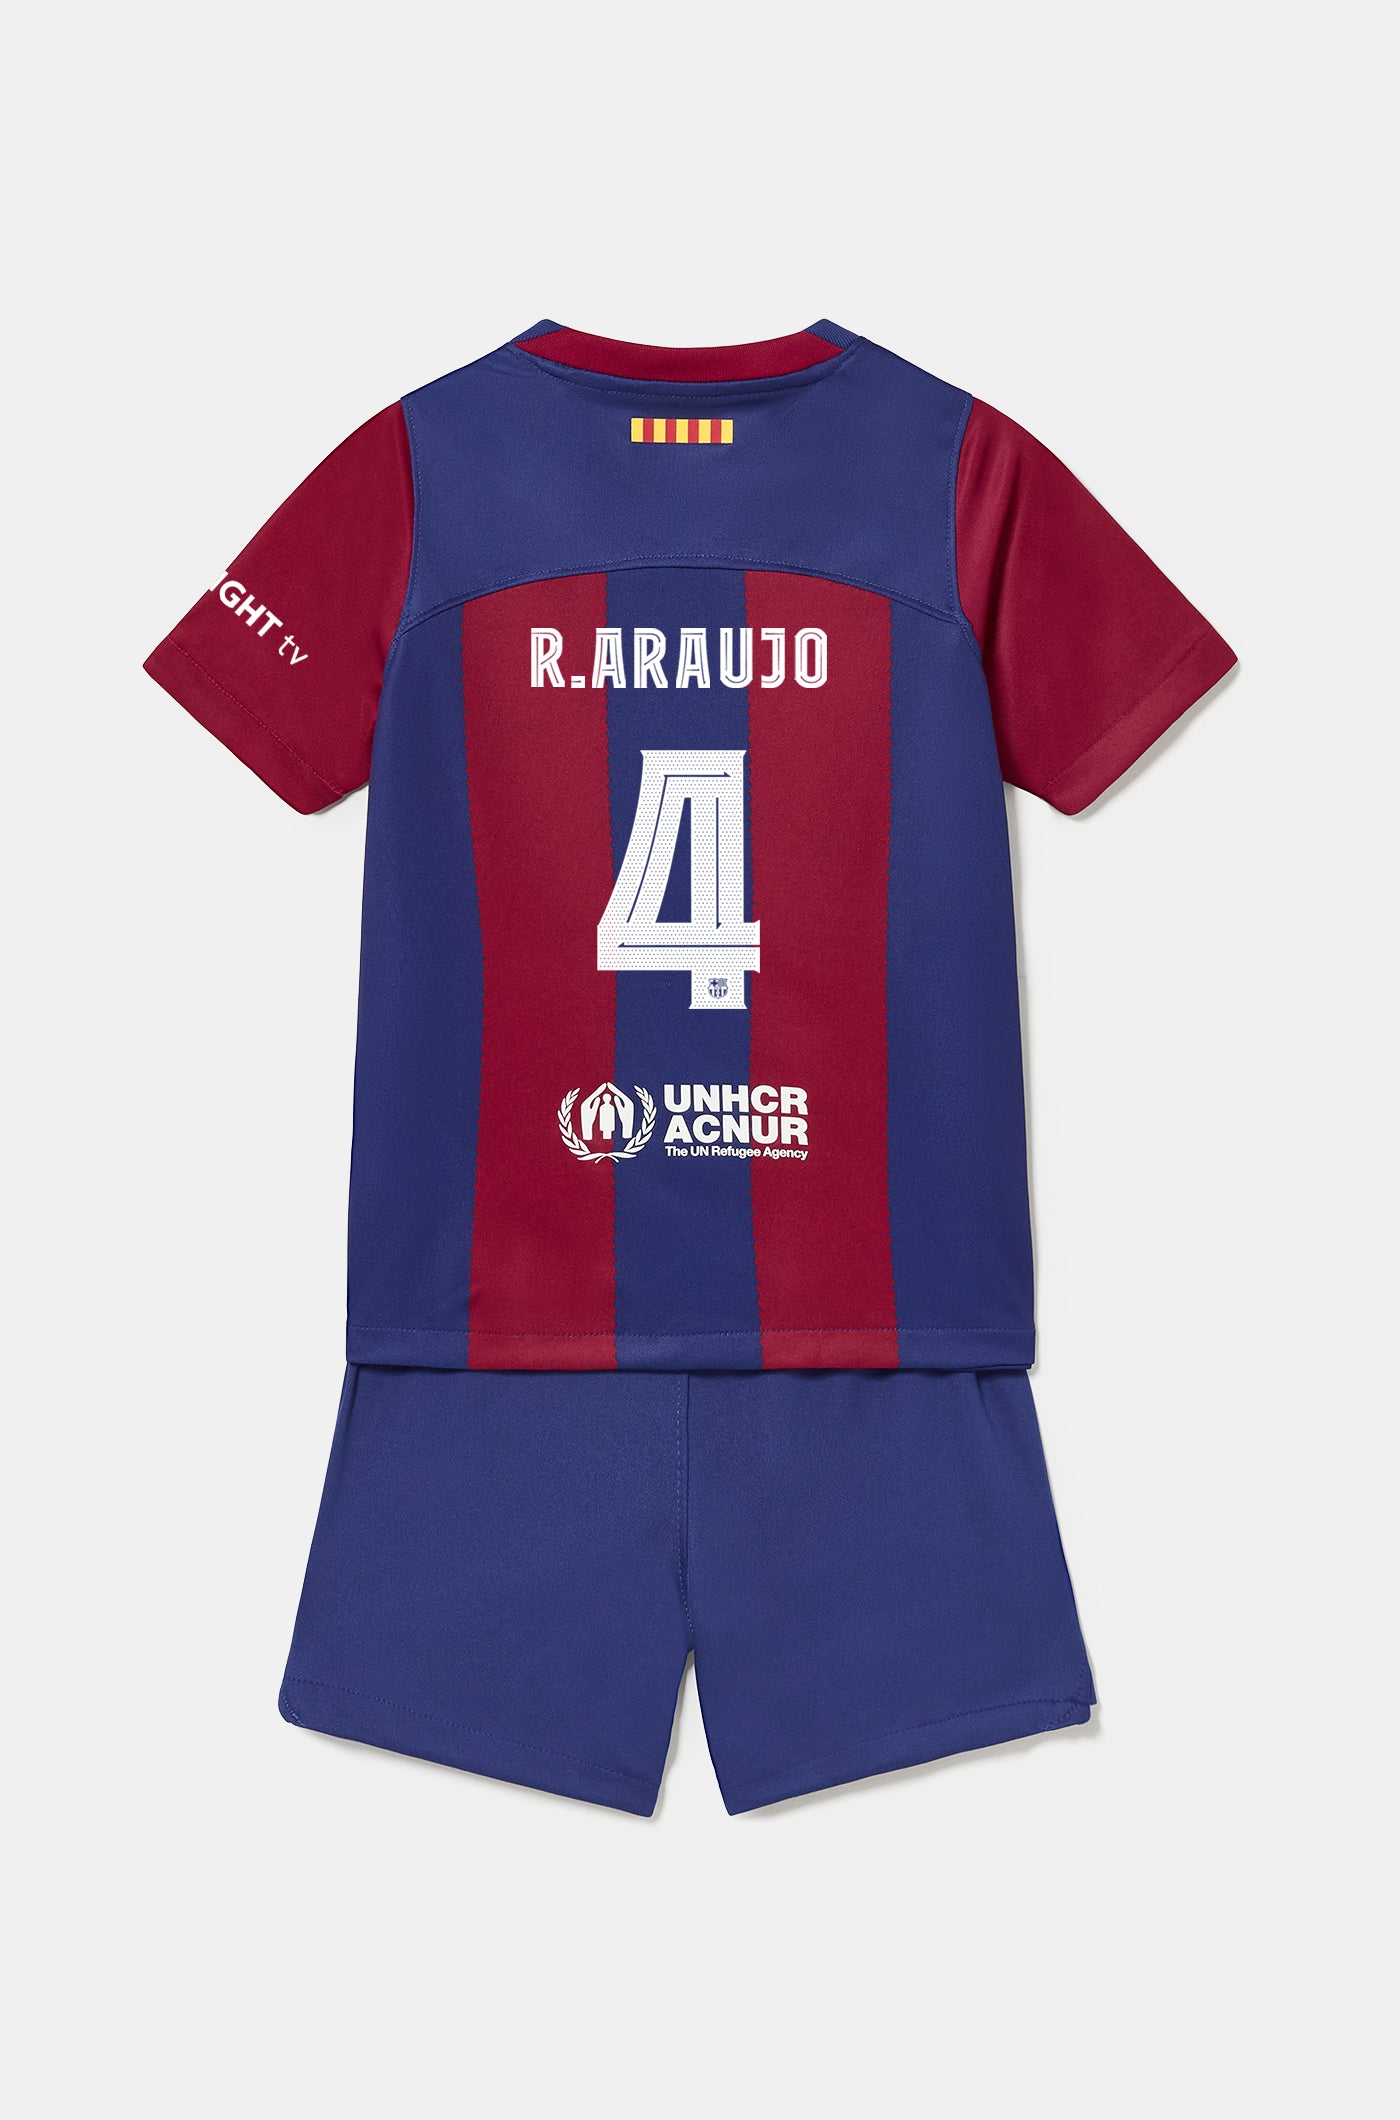 Conjunto primera equipación FC Barcelona 23/24 - Niño/a pequeño/a - R. ARAUJO